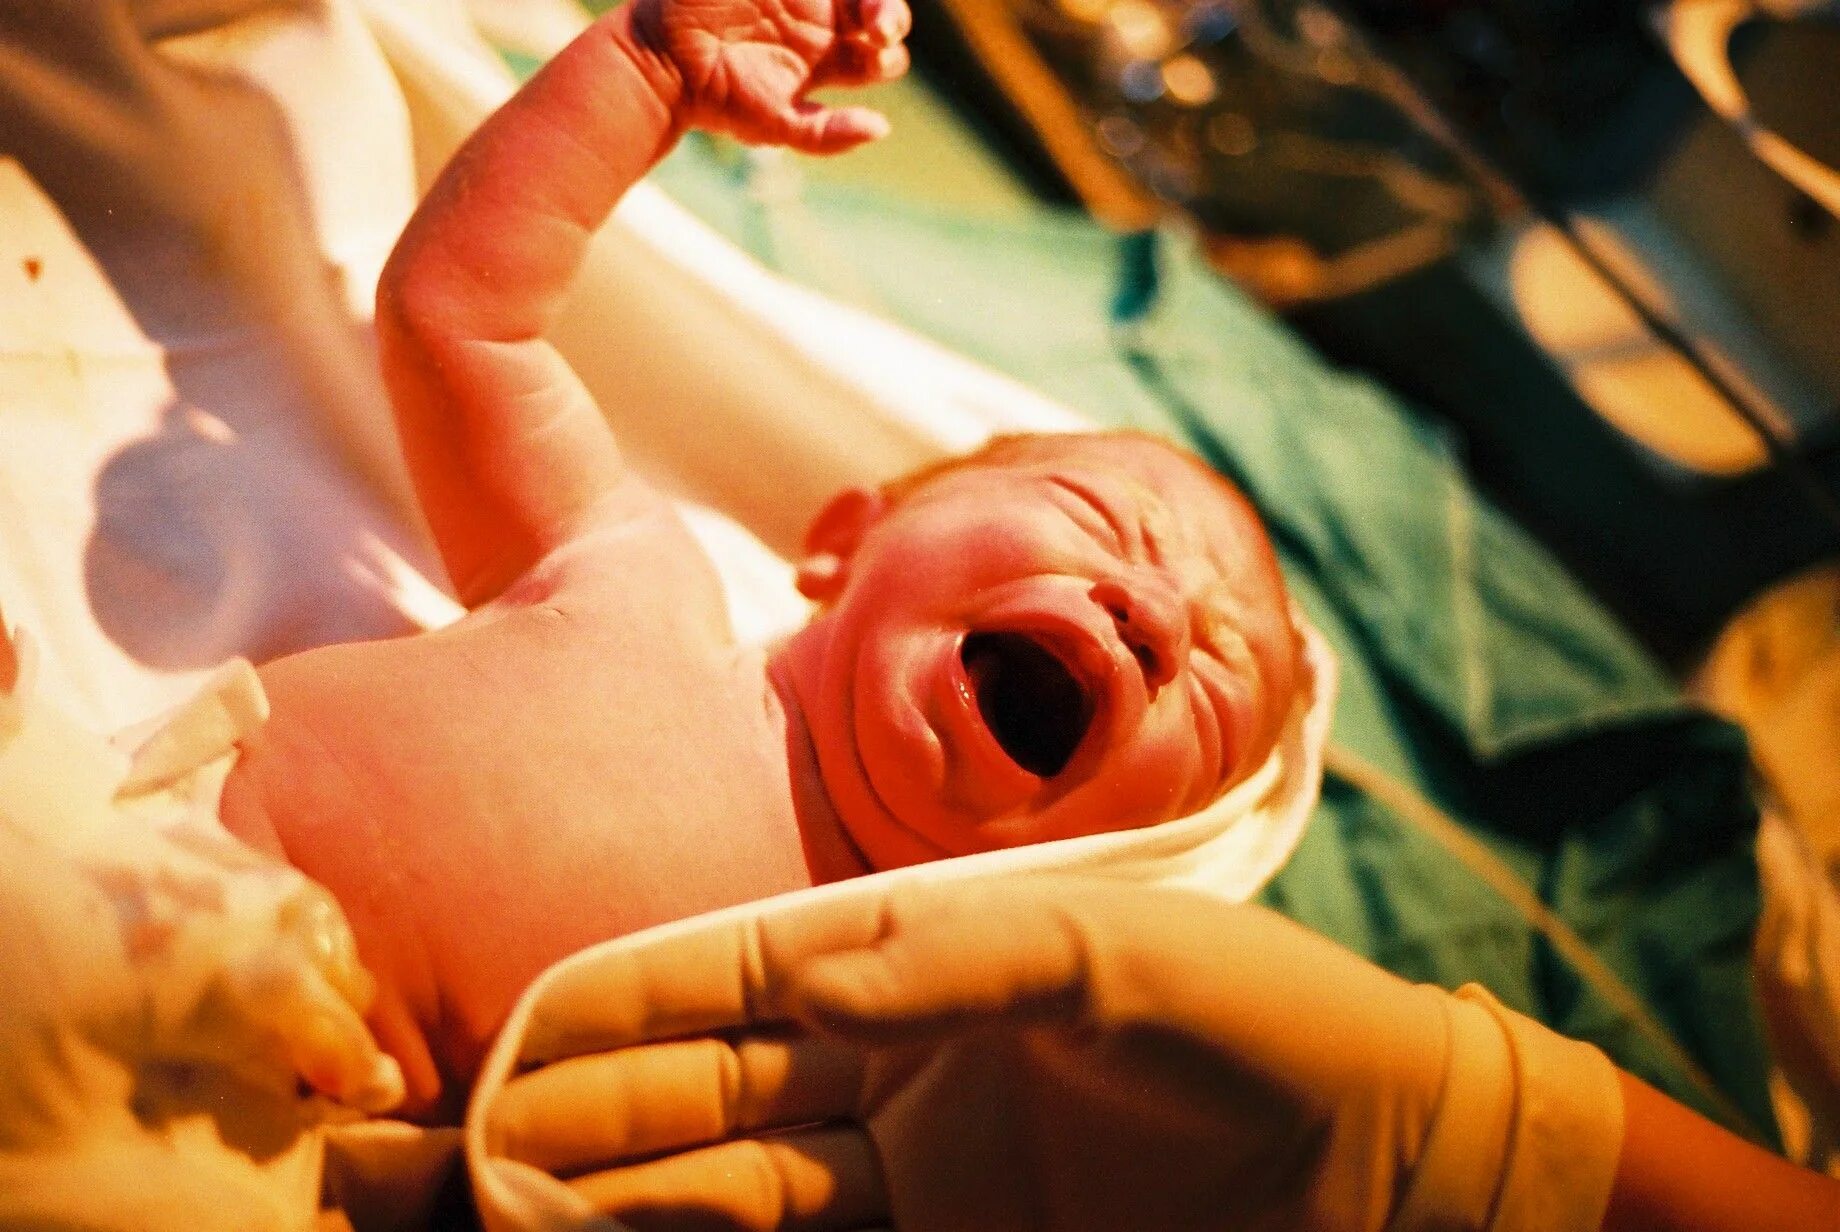 Процесс рождения ребенка в роддоме. Новорожденный в родильном зале. Путь ребенка во время родов